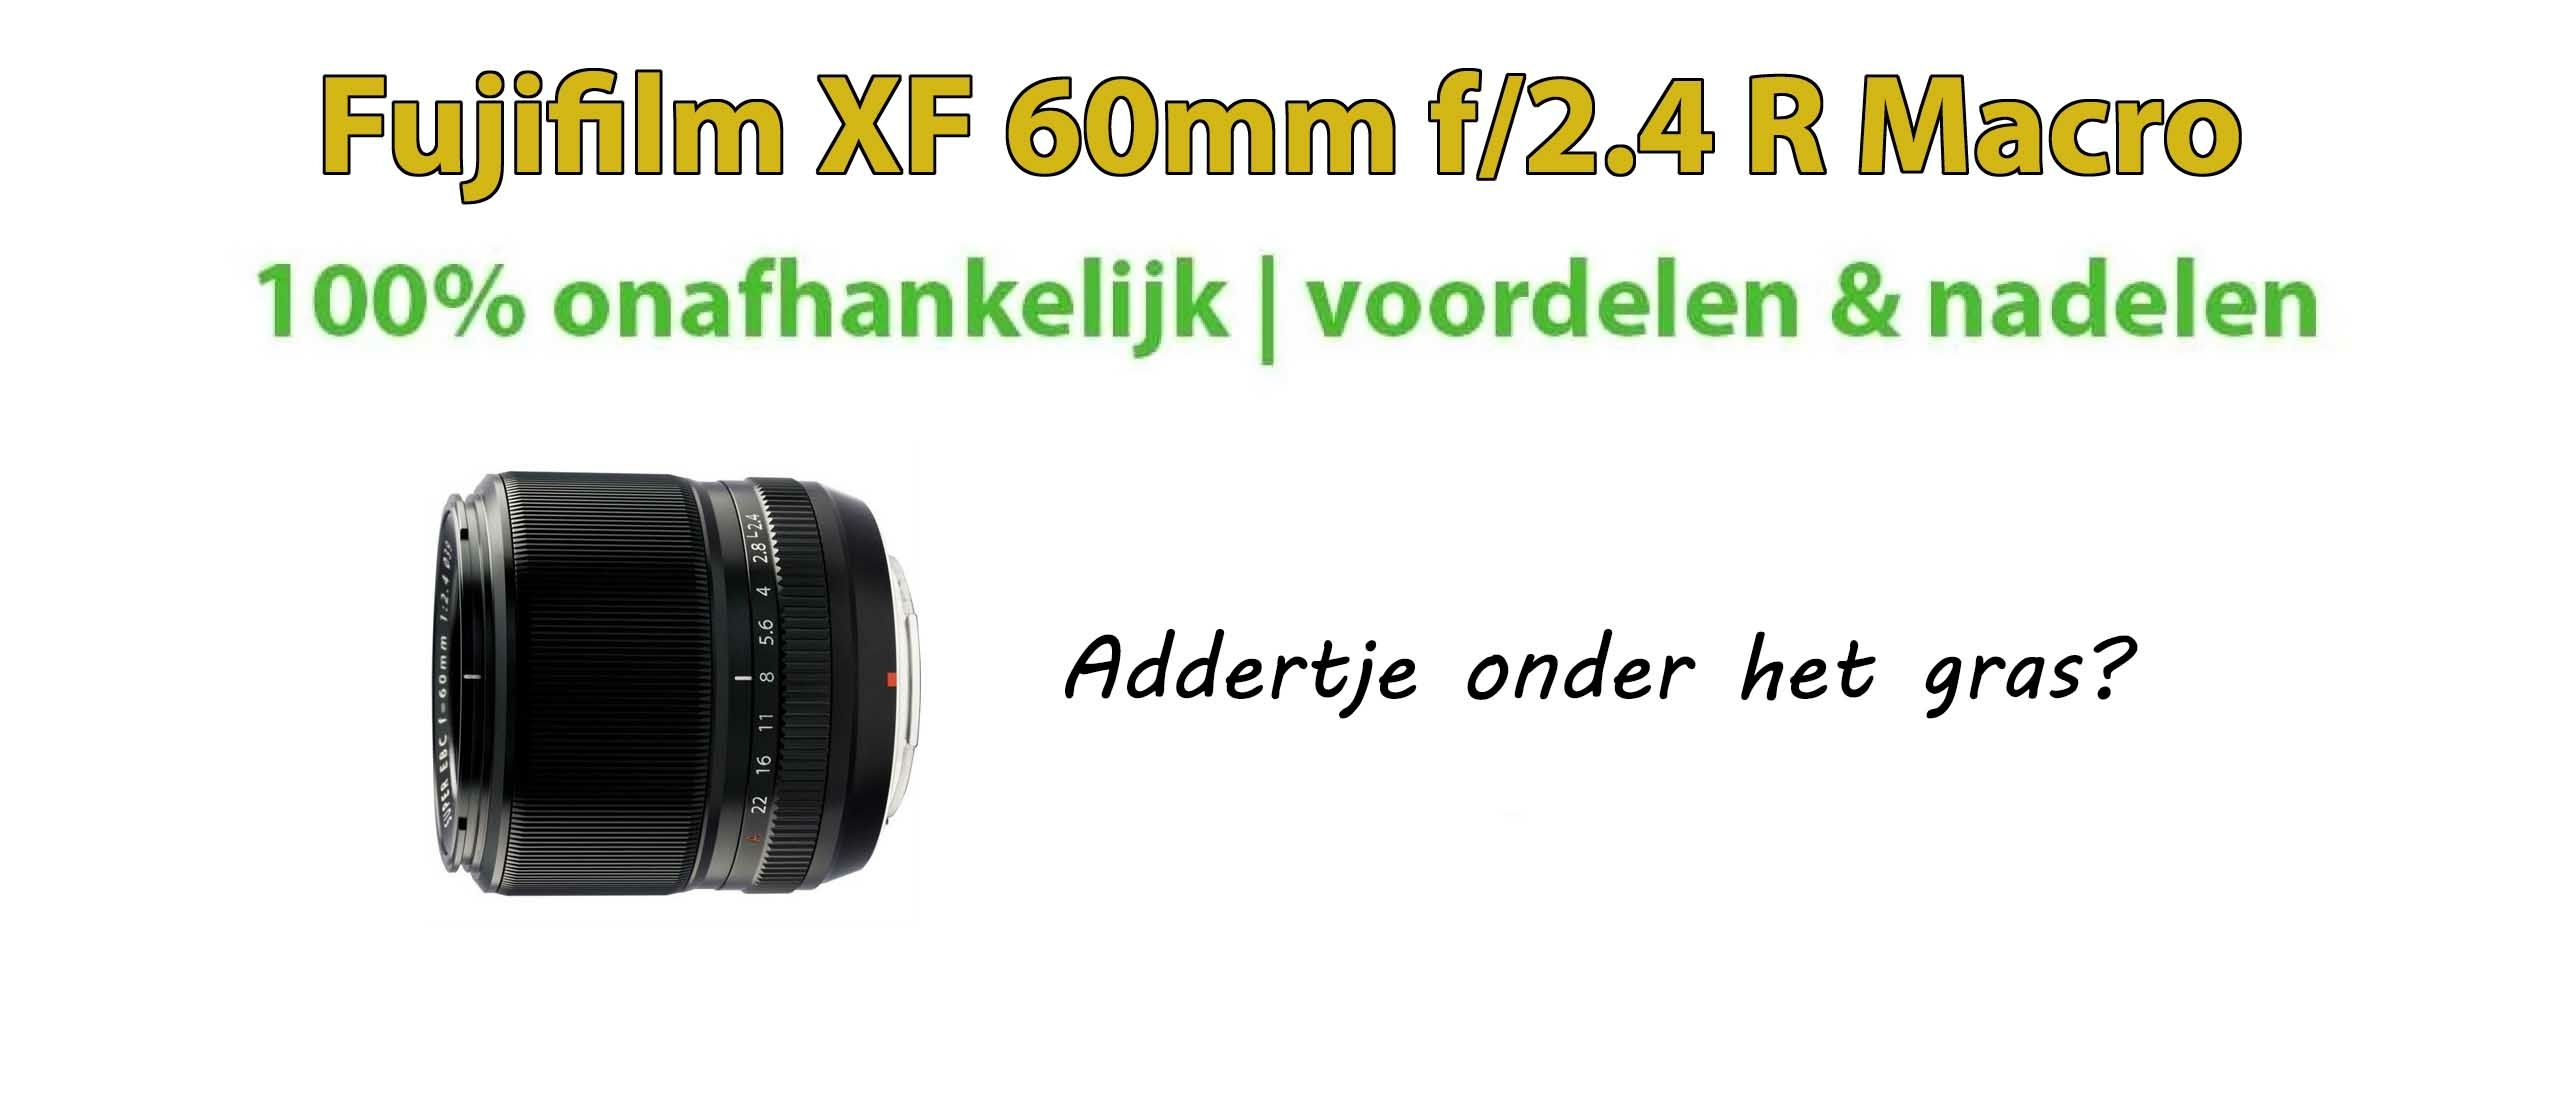 Fujifilm XF 60mm f/2.4 R Macro Review